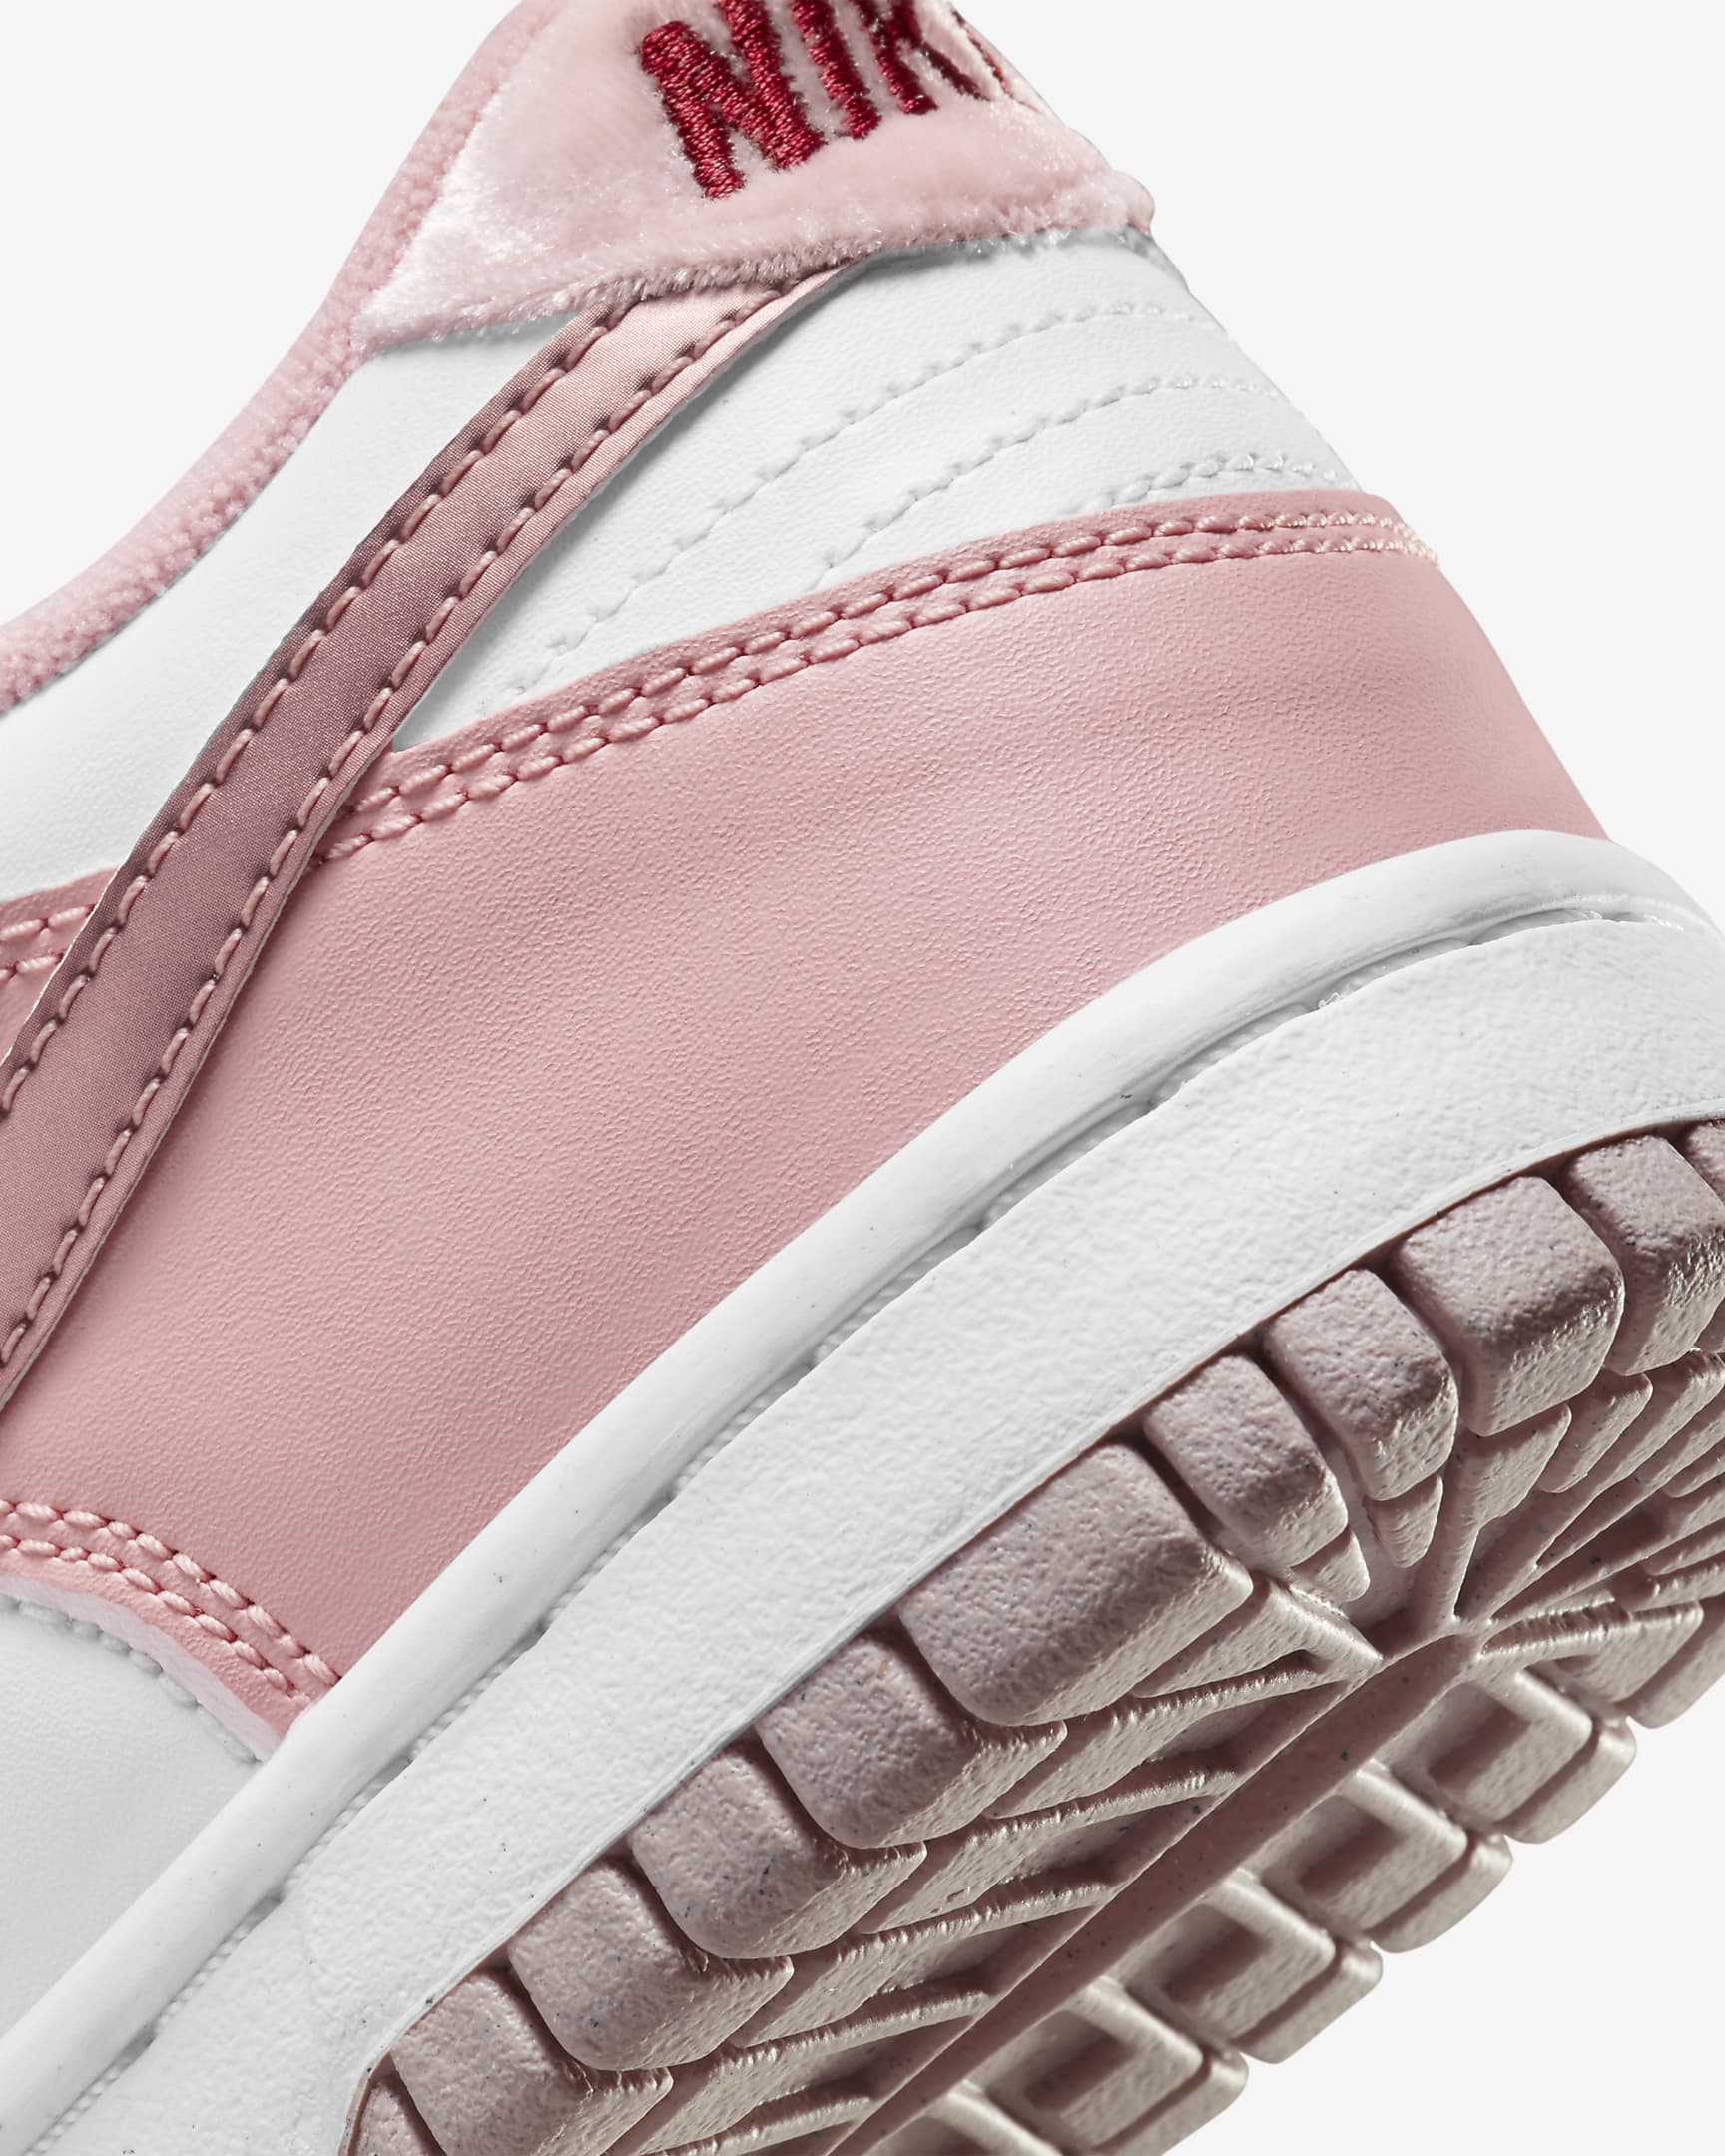 Scarpe Nike Dunk Low - Ragazzi - Pink Glaze/Bianco/Pomegranate/Pink Glaze